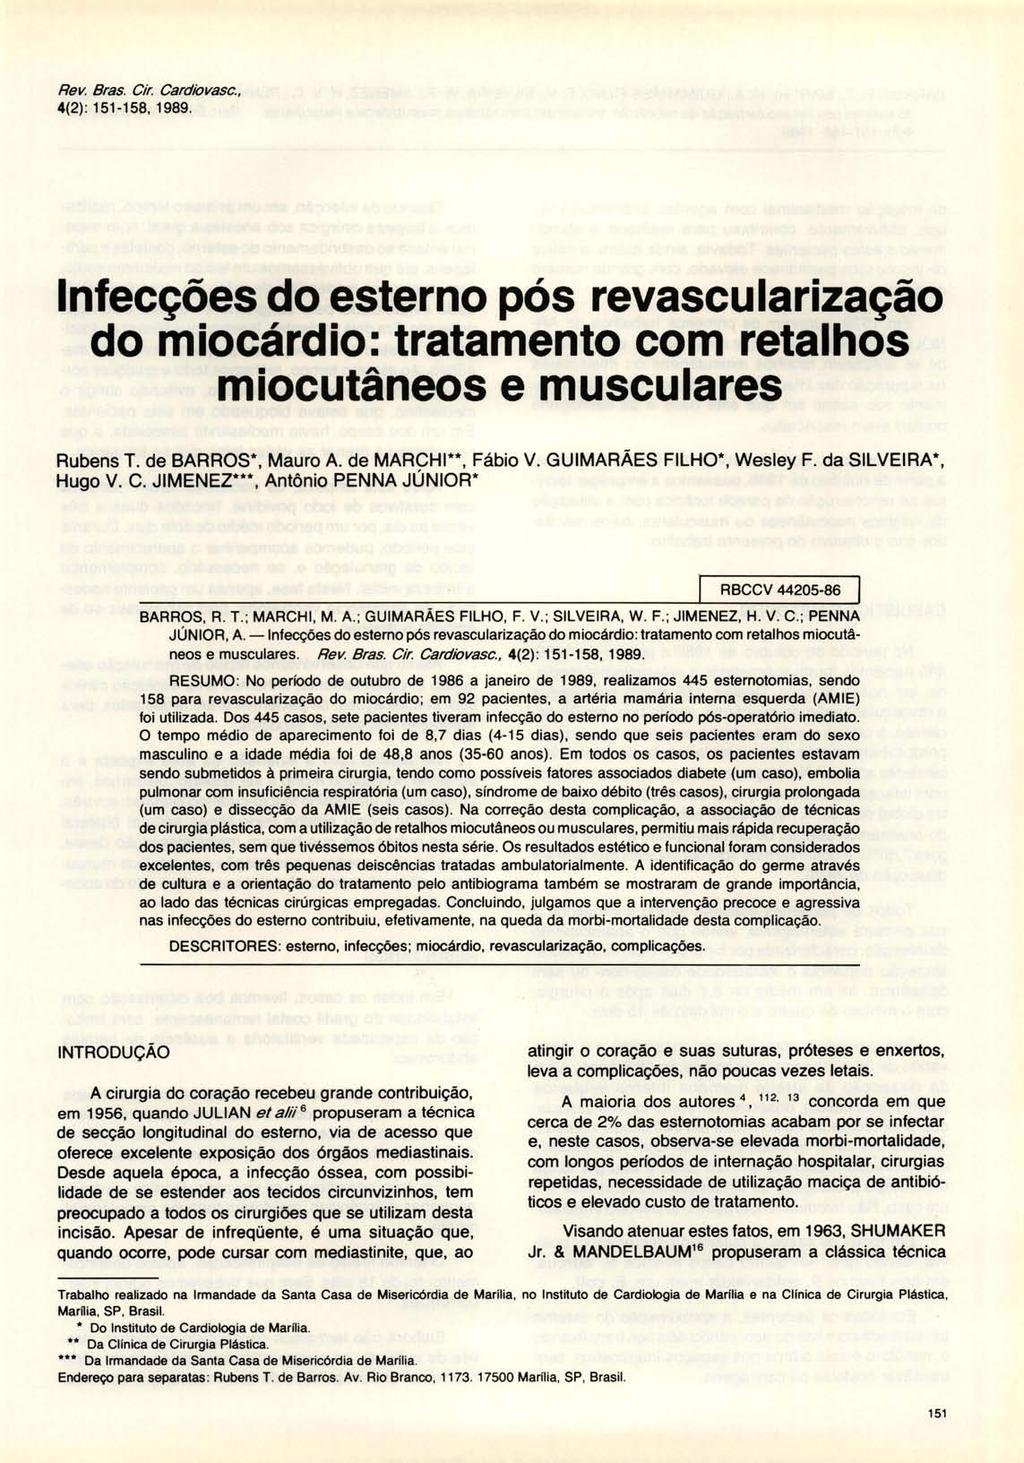 Rev. Bras. Cir. Cardiovasc., 4(2): 151-158, 1989. Infecções do esterno pós revascularização do miocárdio: tratamento com retalhos miocutâneos e musculares Rubens T. de BARROS*, Mauro A.